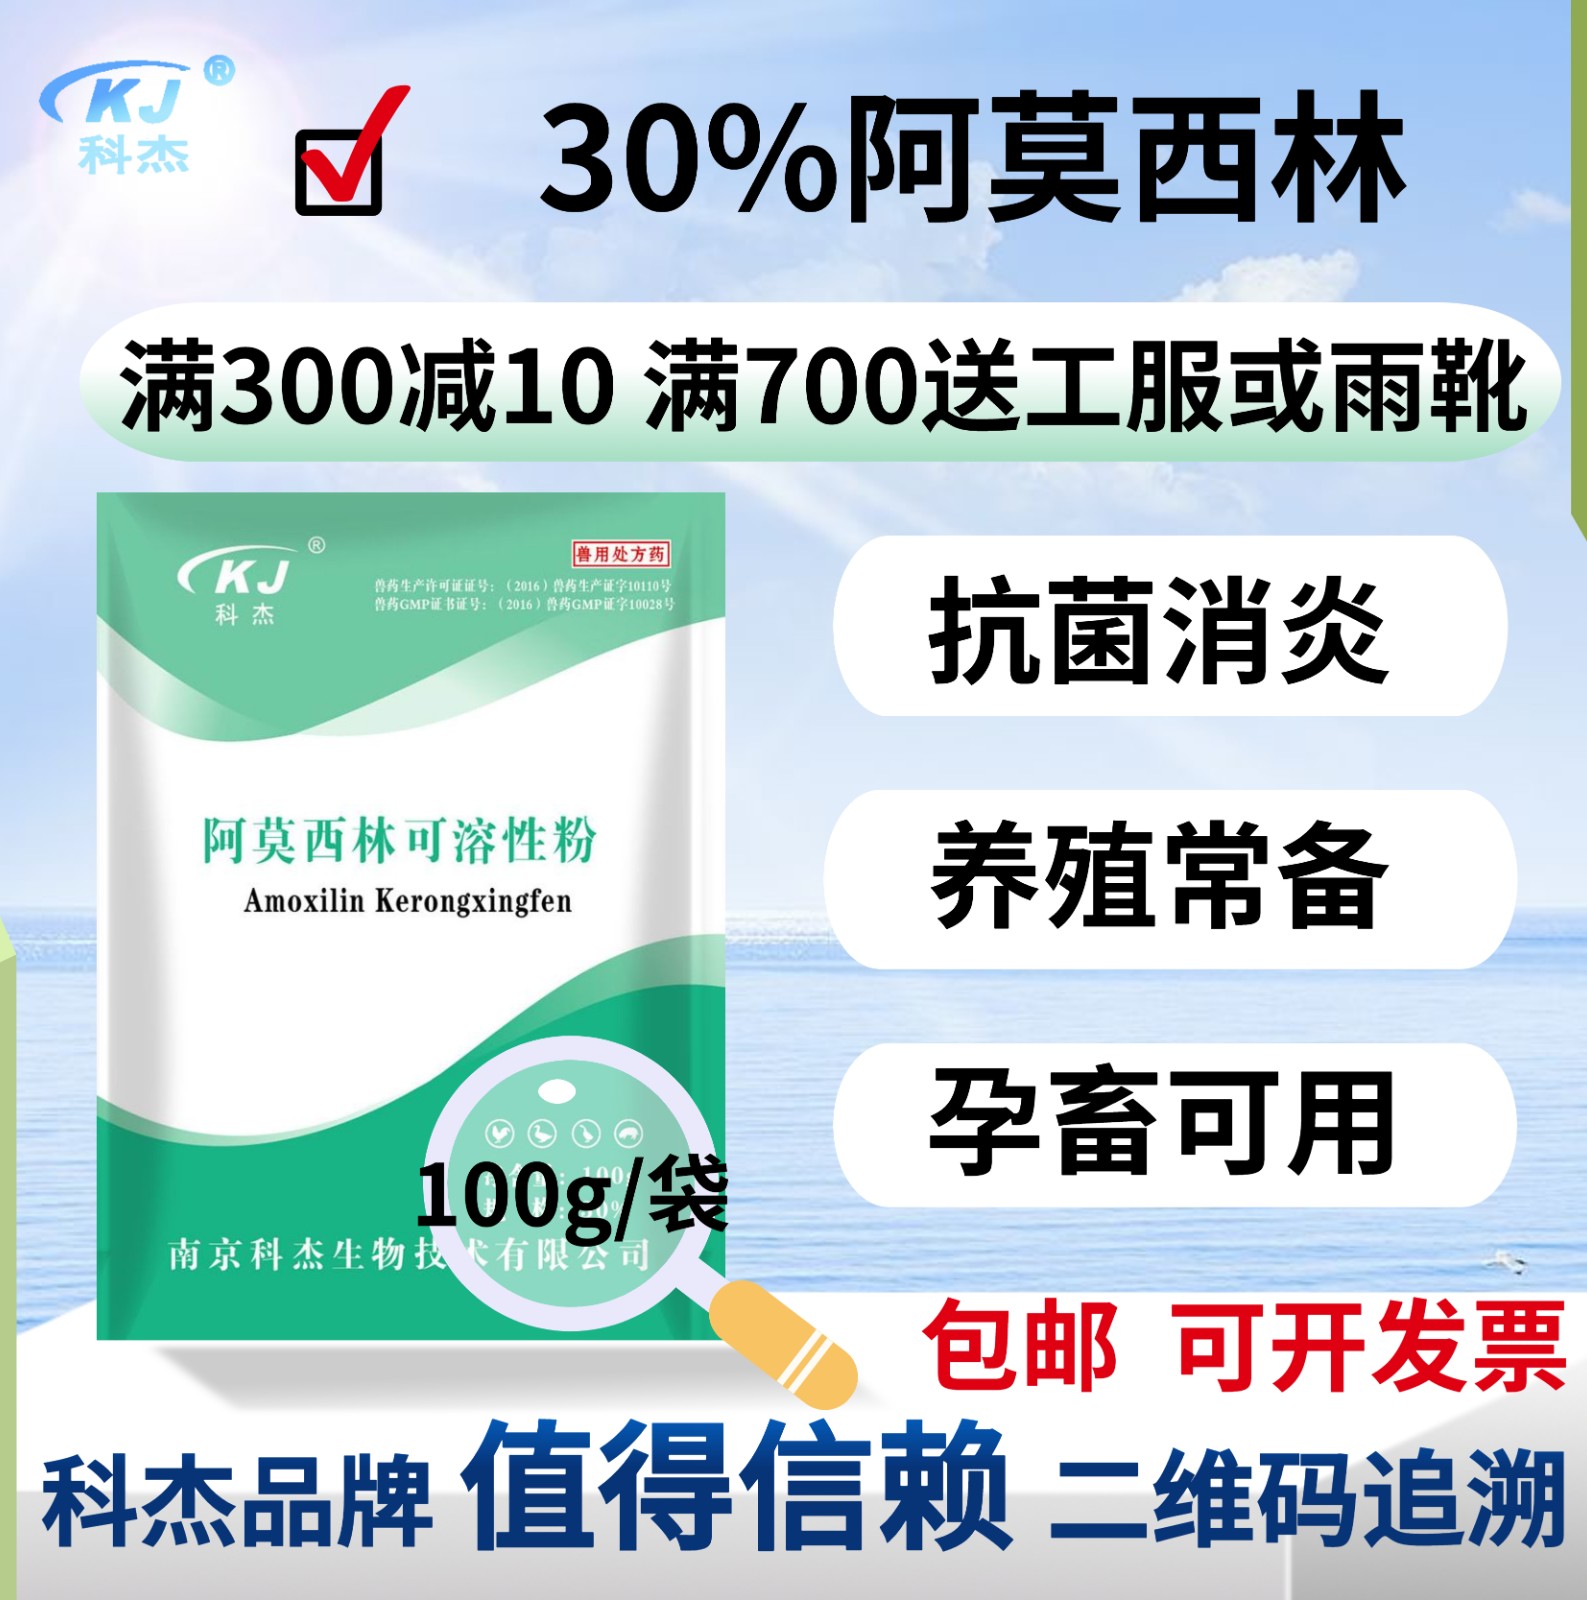 【南京科杰】30%阿莫西林可溶性粉 用于治疗畜、禽黄白痢、猪丹毒、母猪产科类疾病，抗感染，产后消炎。